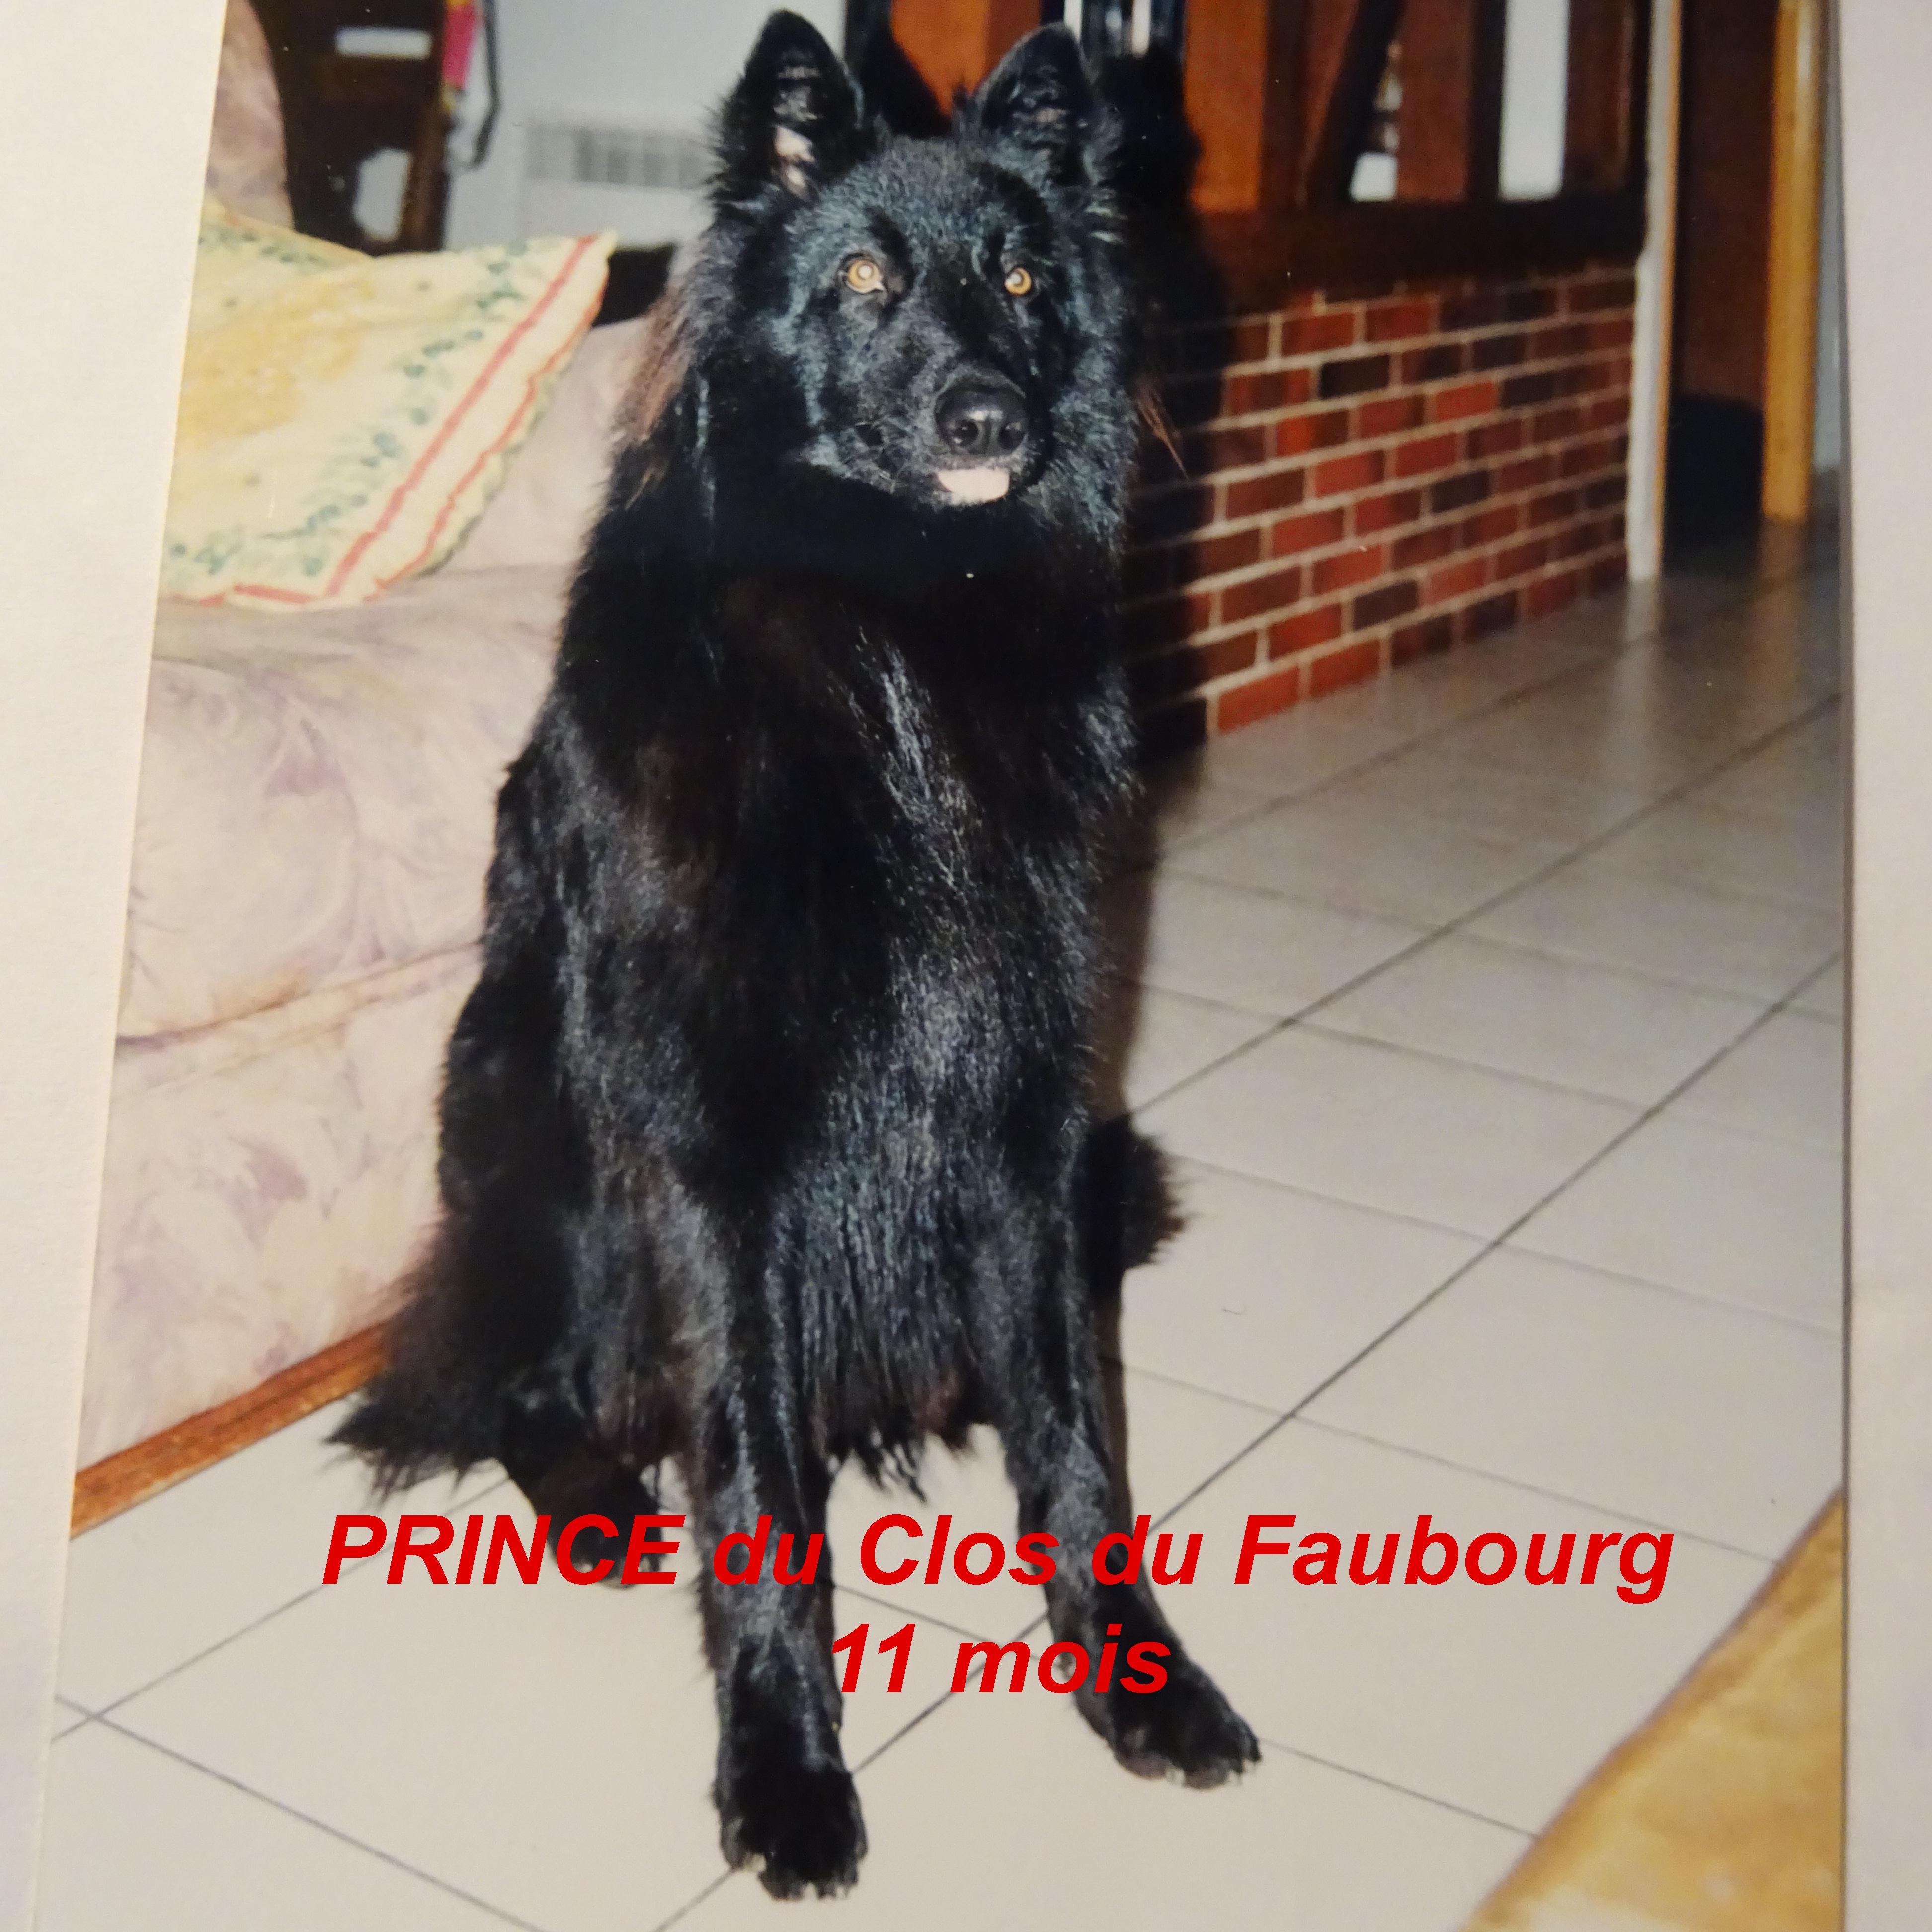 Prince (1999) Du clos du faubourg